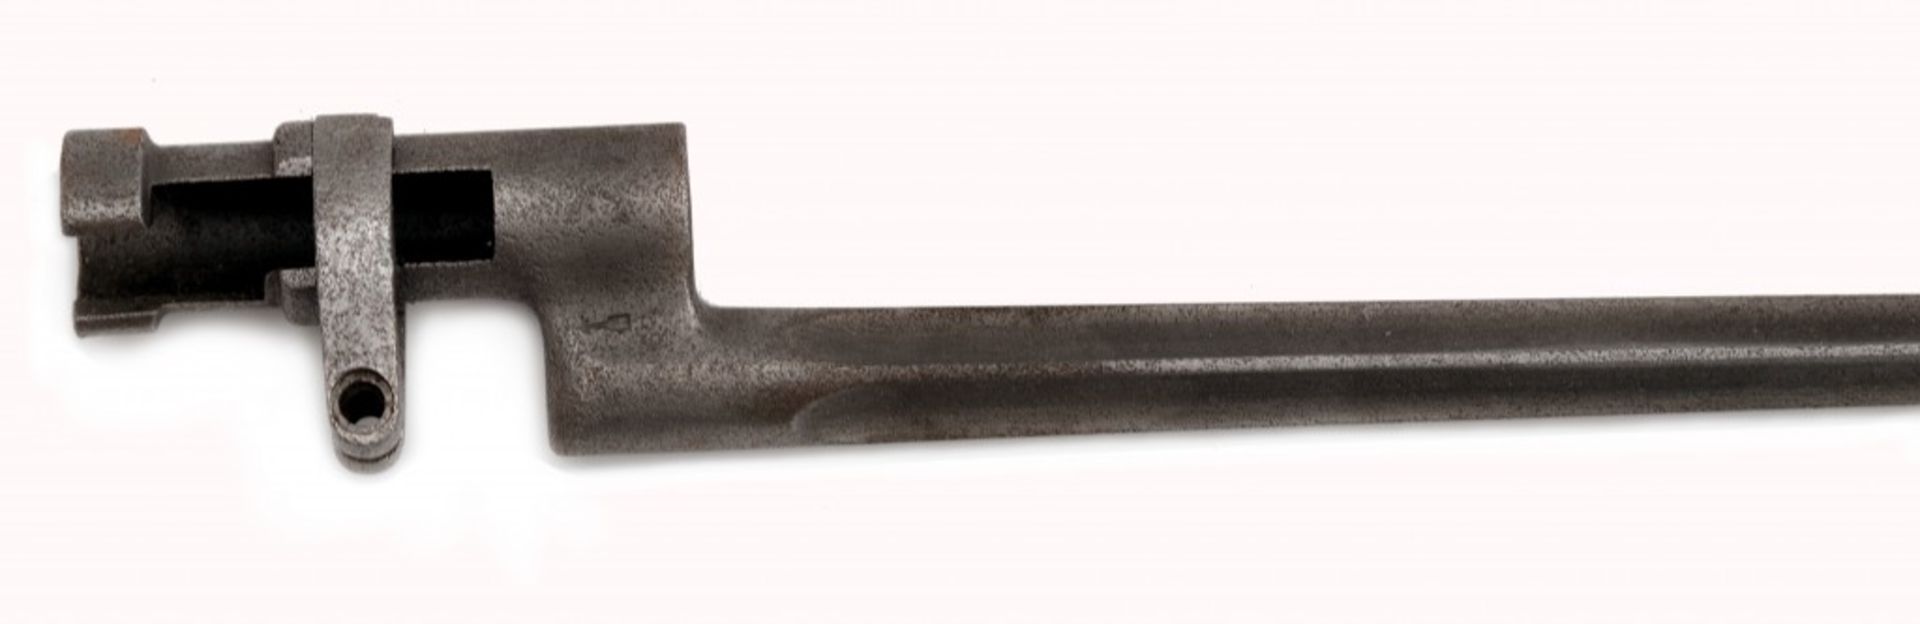 Zwei Bajonette für Mosin-Nagant-Gewehr Modelle 1891/30 und 1891 - Image 4 of 4